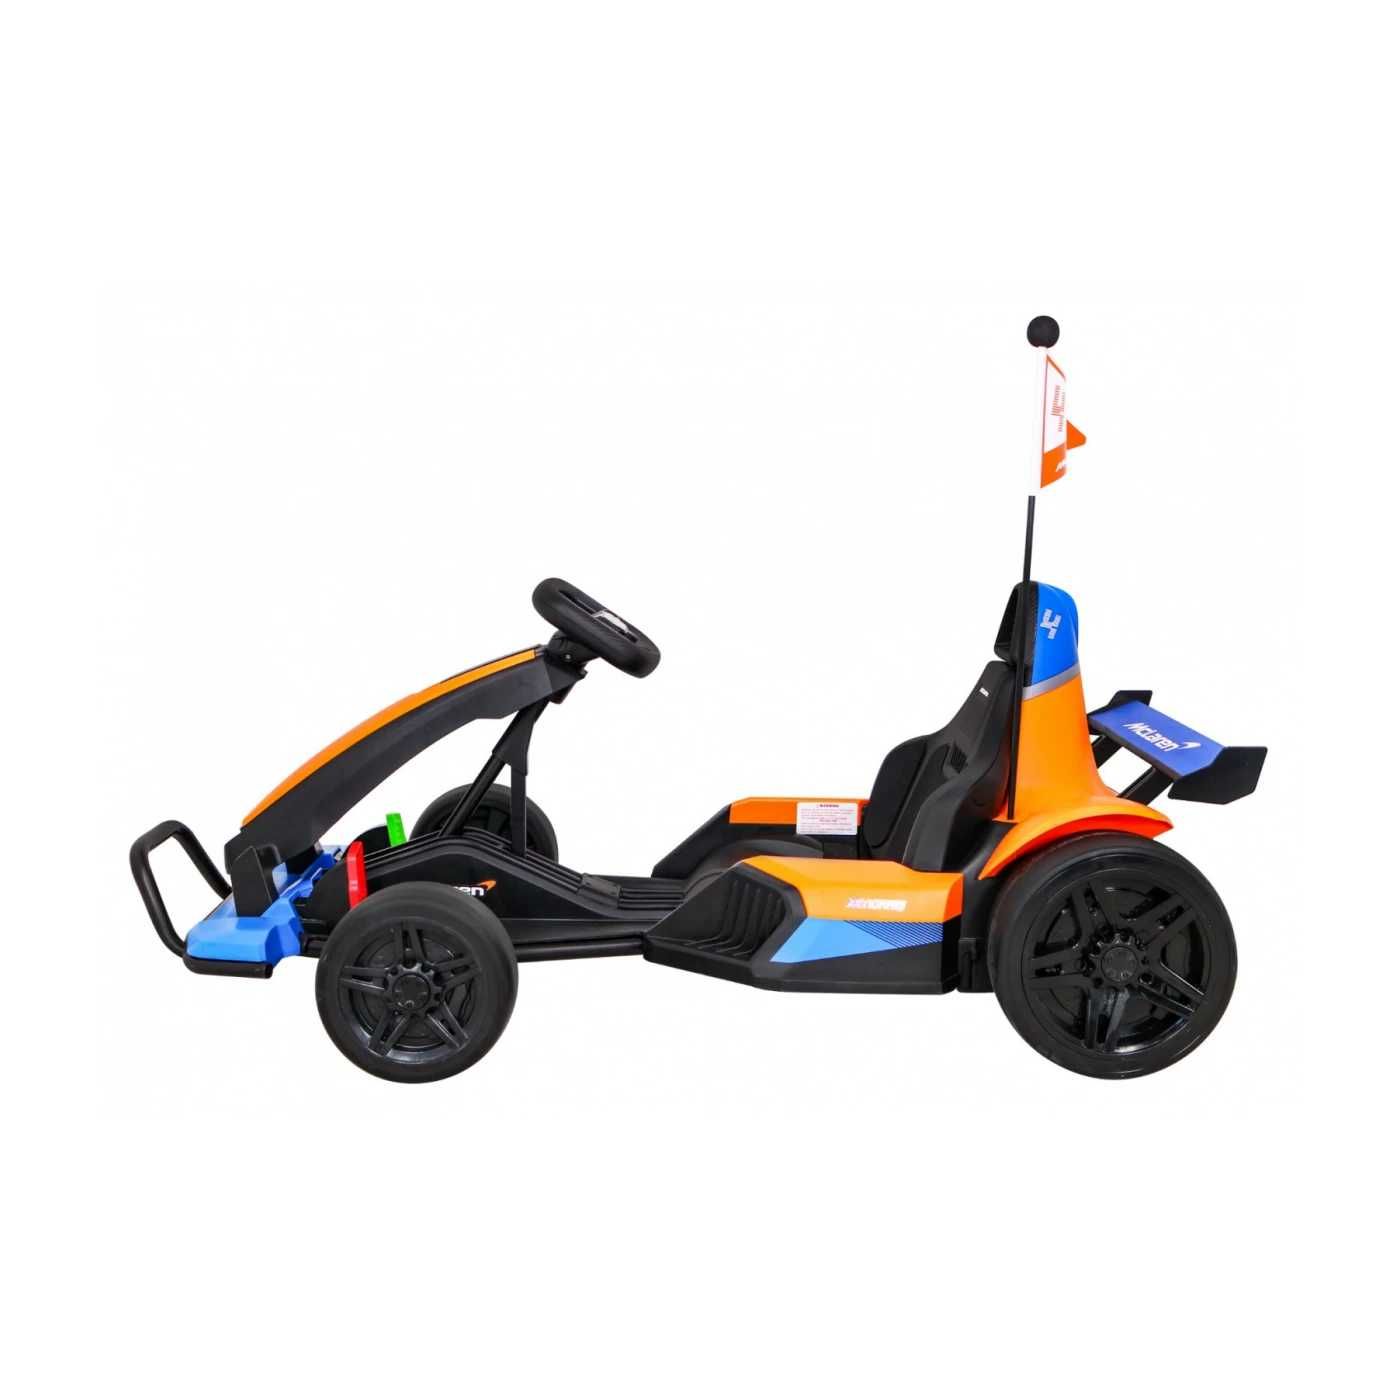 Gokart McLaren Drift na akumulator dla dzieci  Funkcja driftu